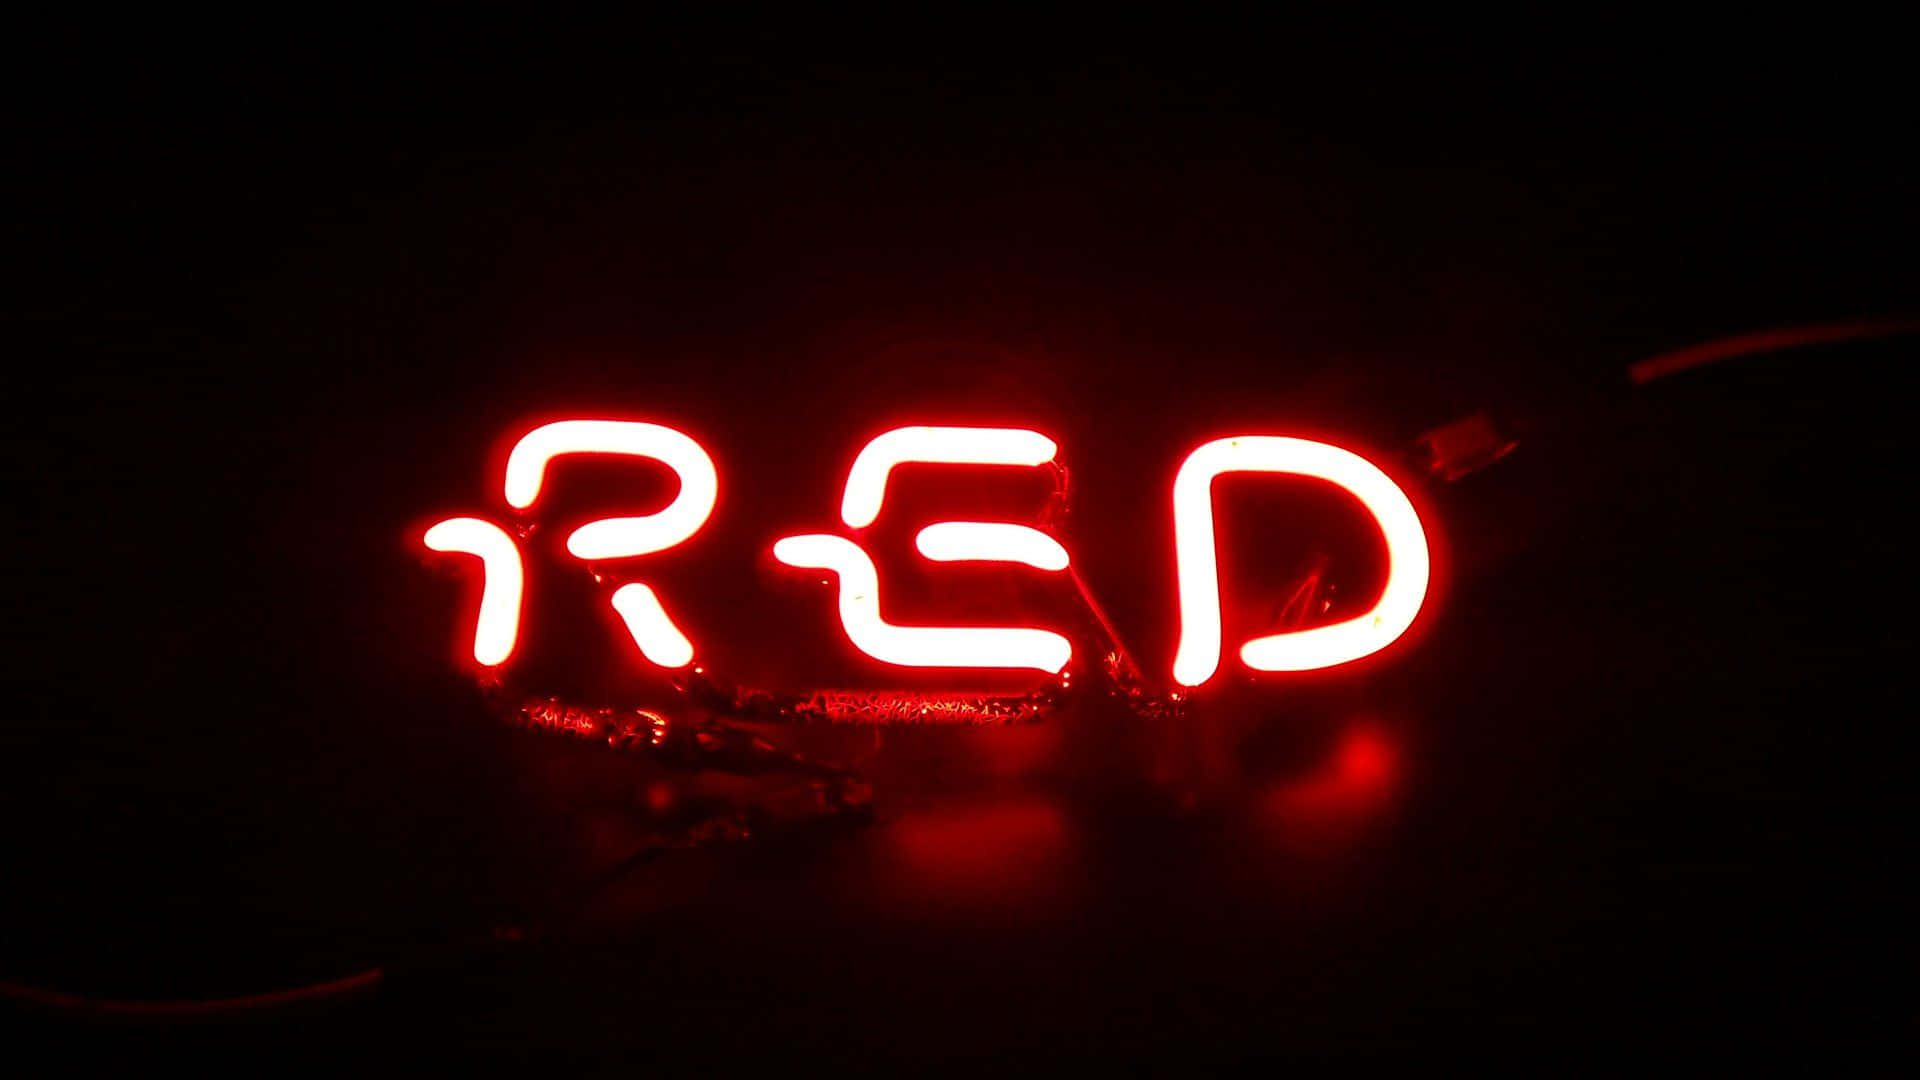 3dneonschild Mit Rotem Led-lichtbild